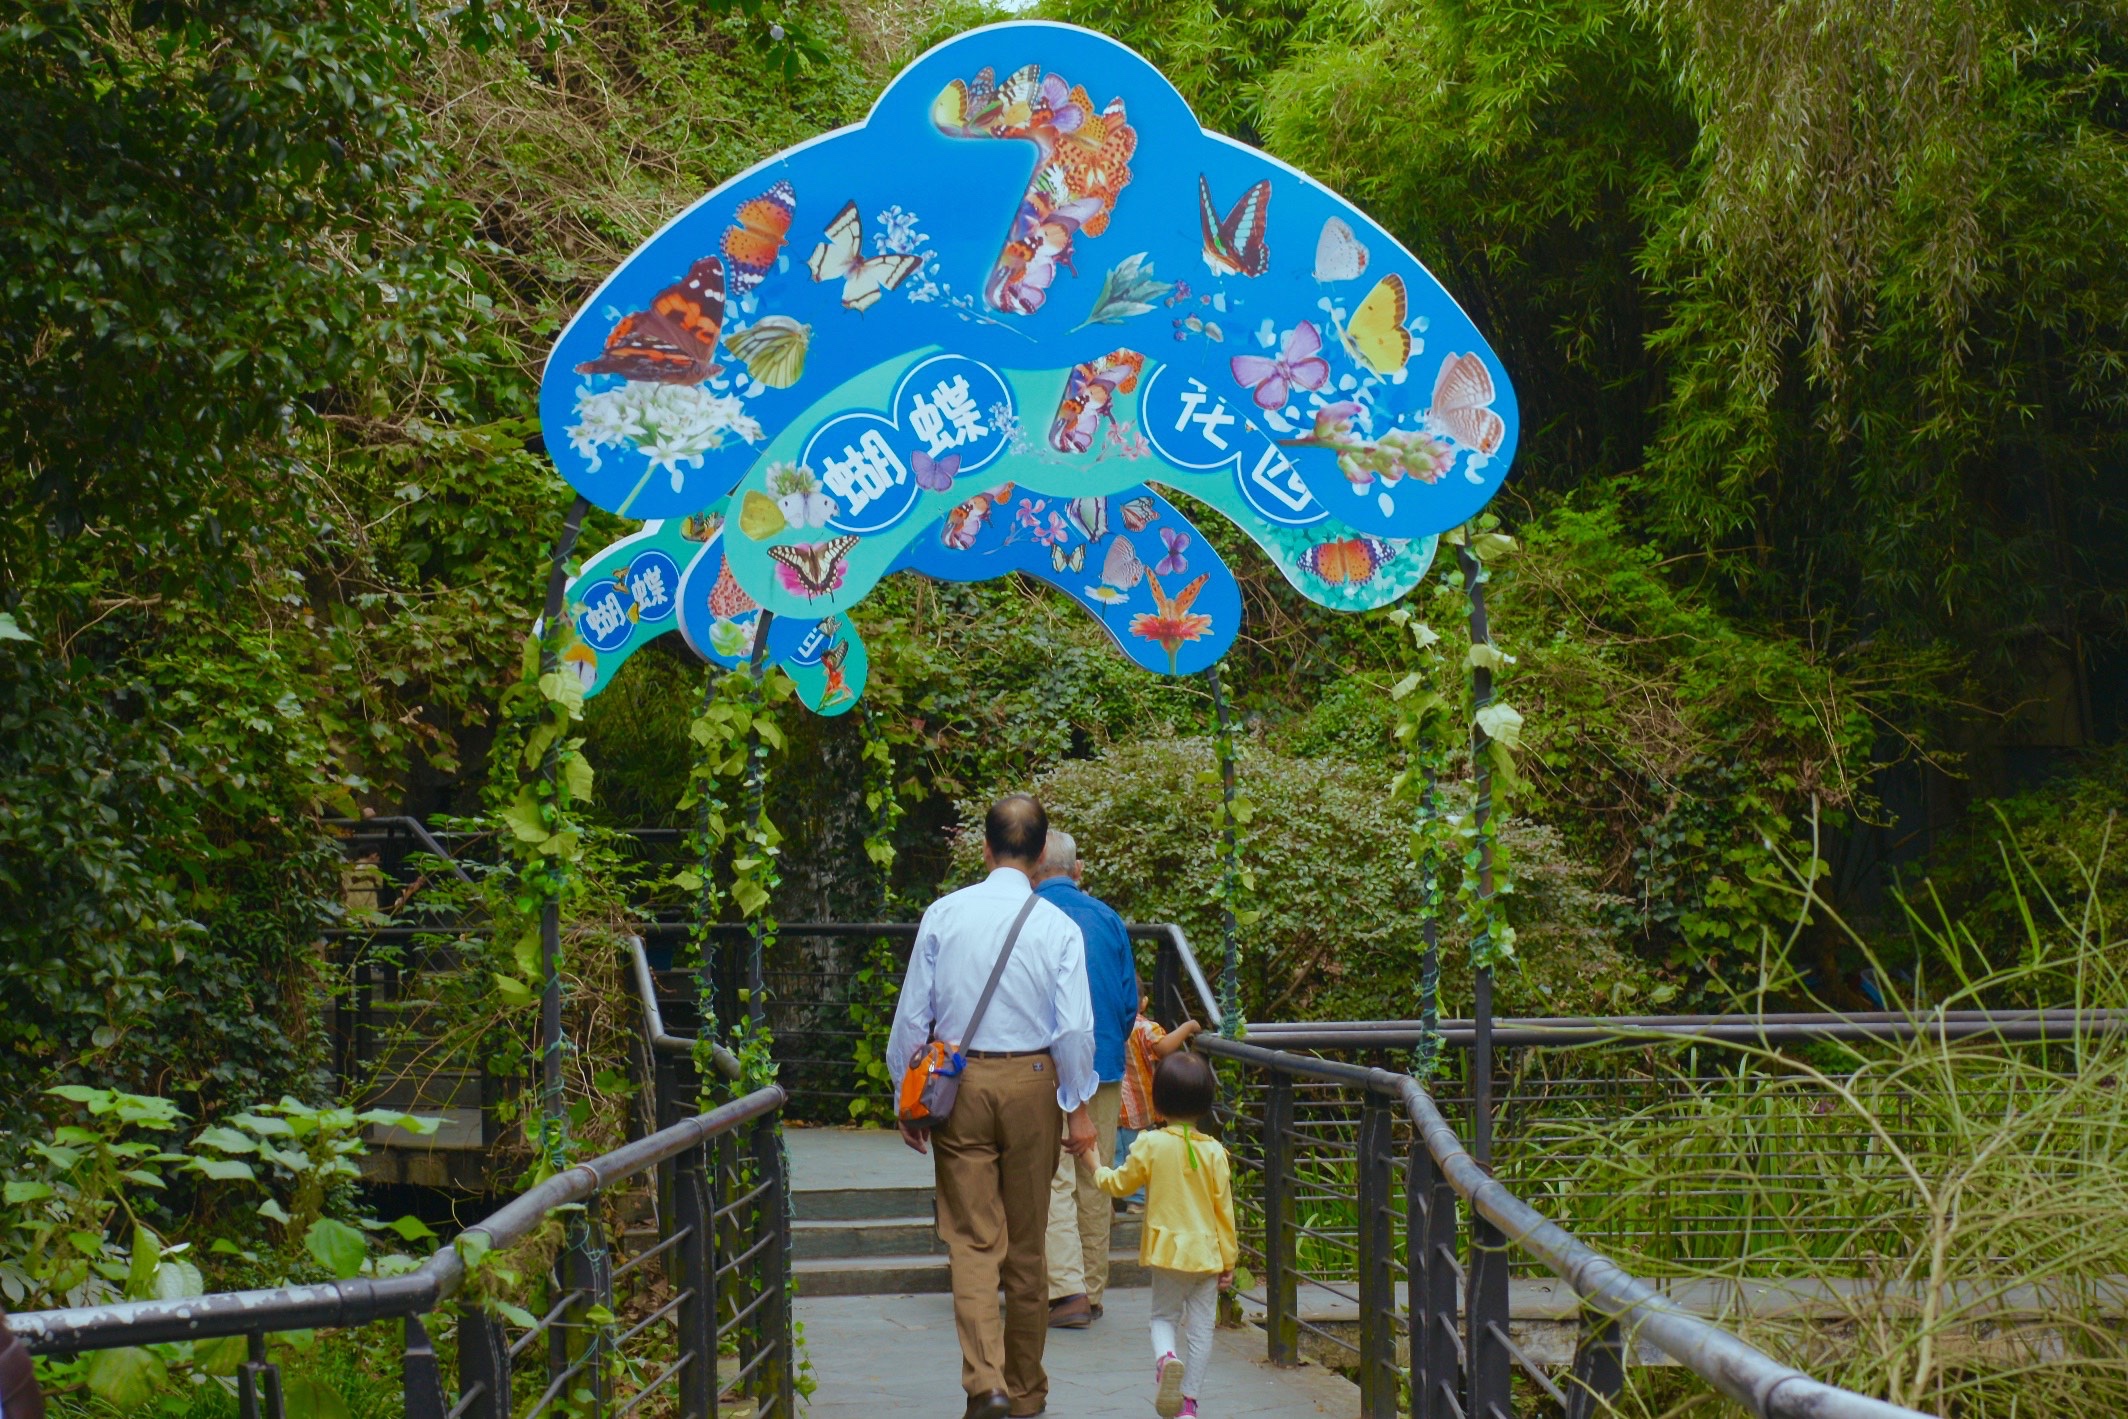 上海动物园蝴蝶展上8万只蝴蝶翩飞，展览重视科教、珍视乡土